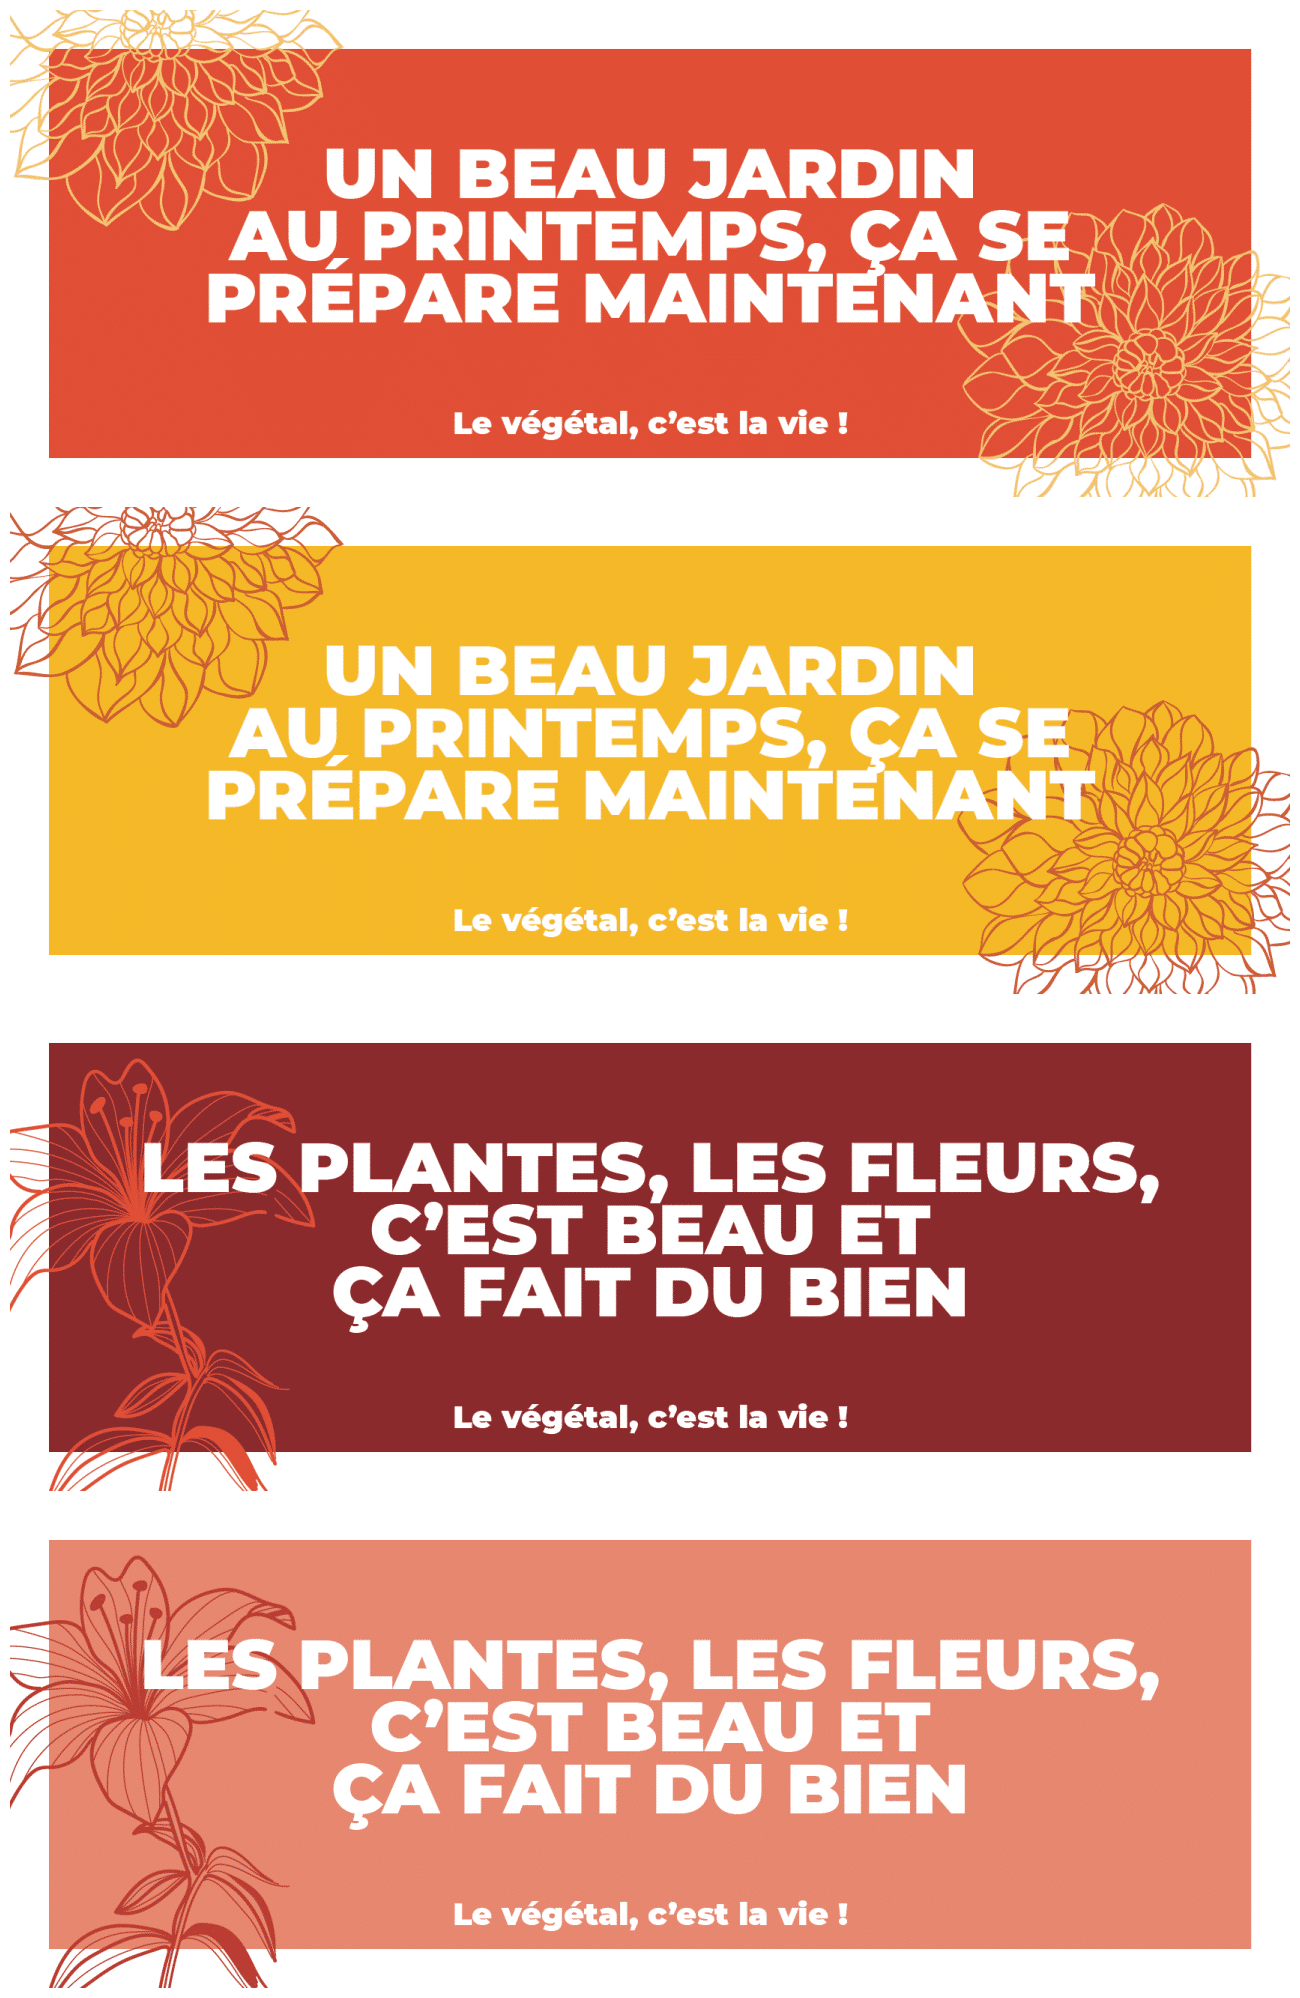 Valhor Lance Sa Deuxième Campagne De Communication Dédiée Au Grand Public Pour Promouvoir « Le Végétal, C’est La Vie ! »